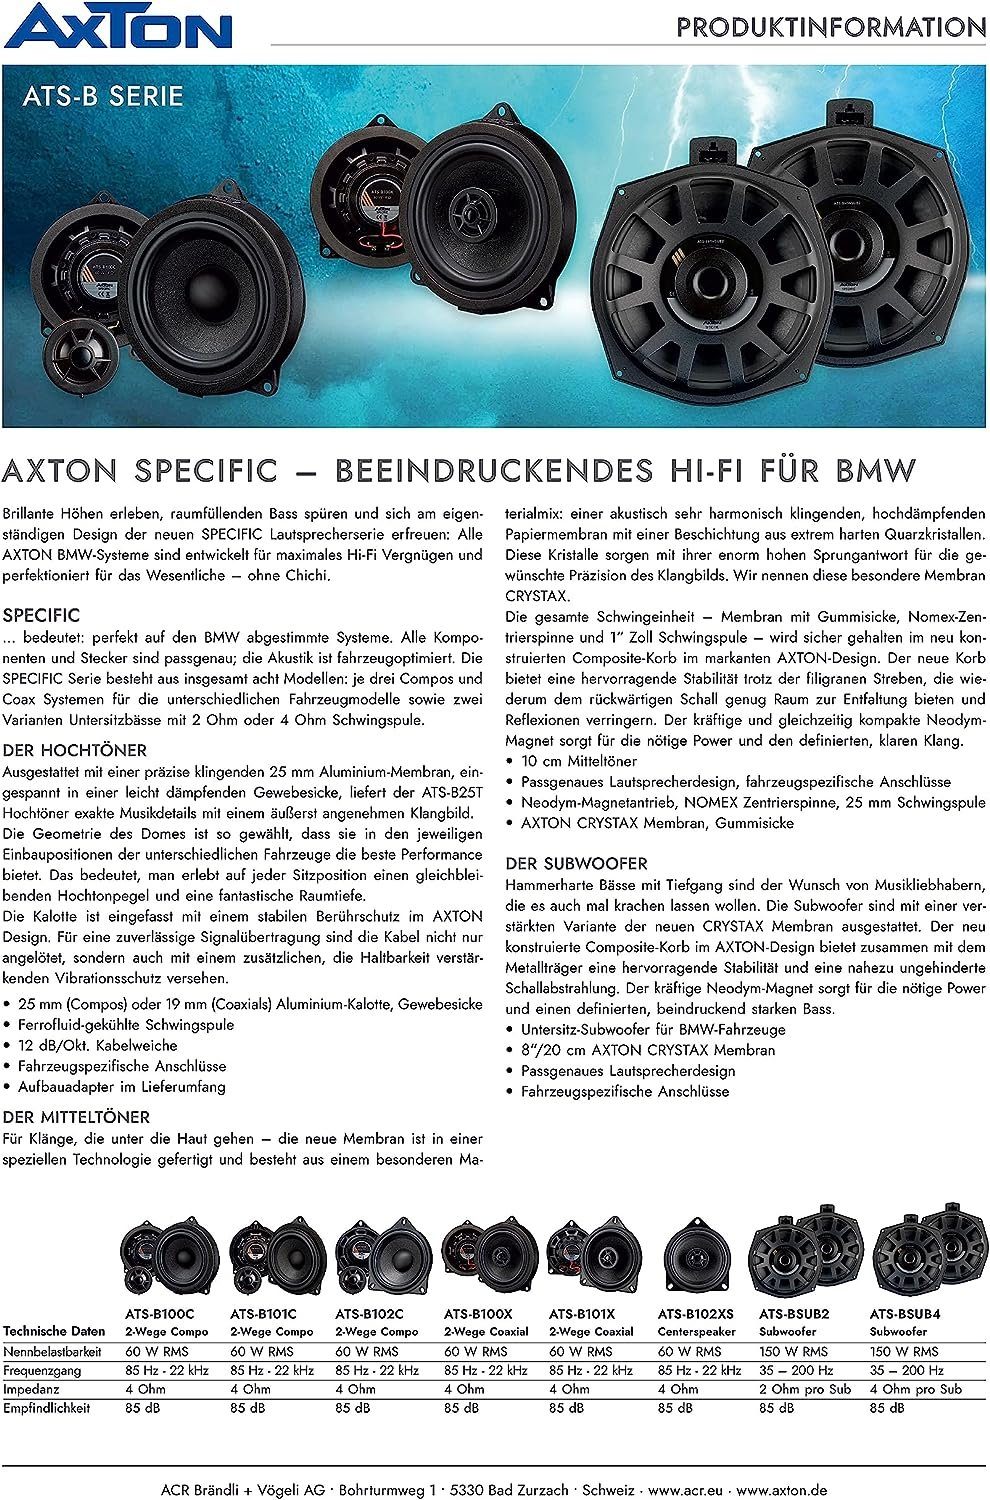 2-Wege-Lautsprecher ATS-B101C für Axton BMW Auto-Lautsprecher Axton